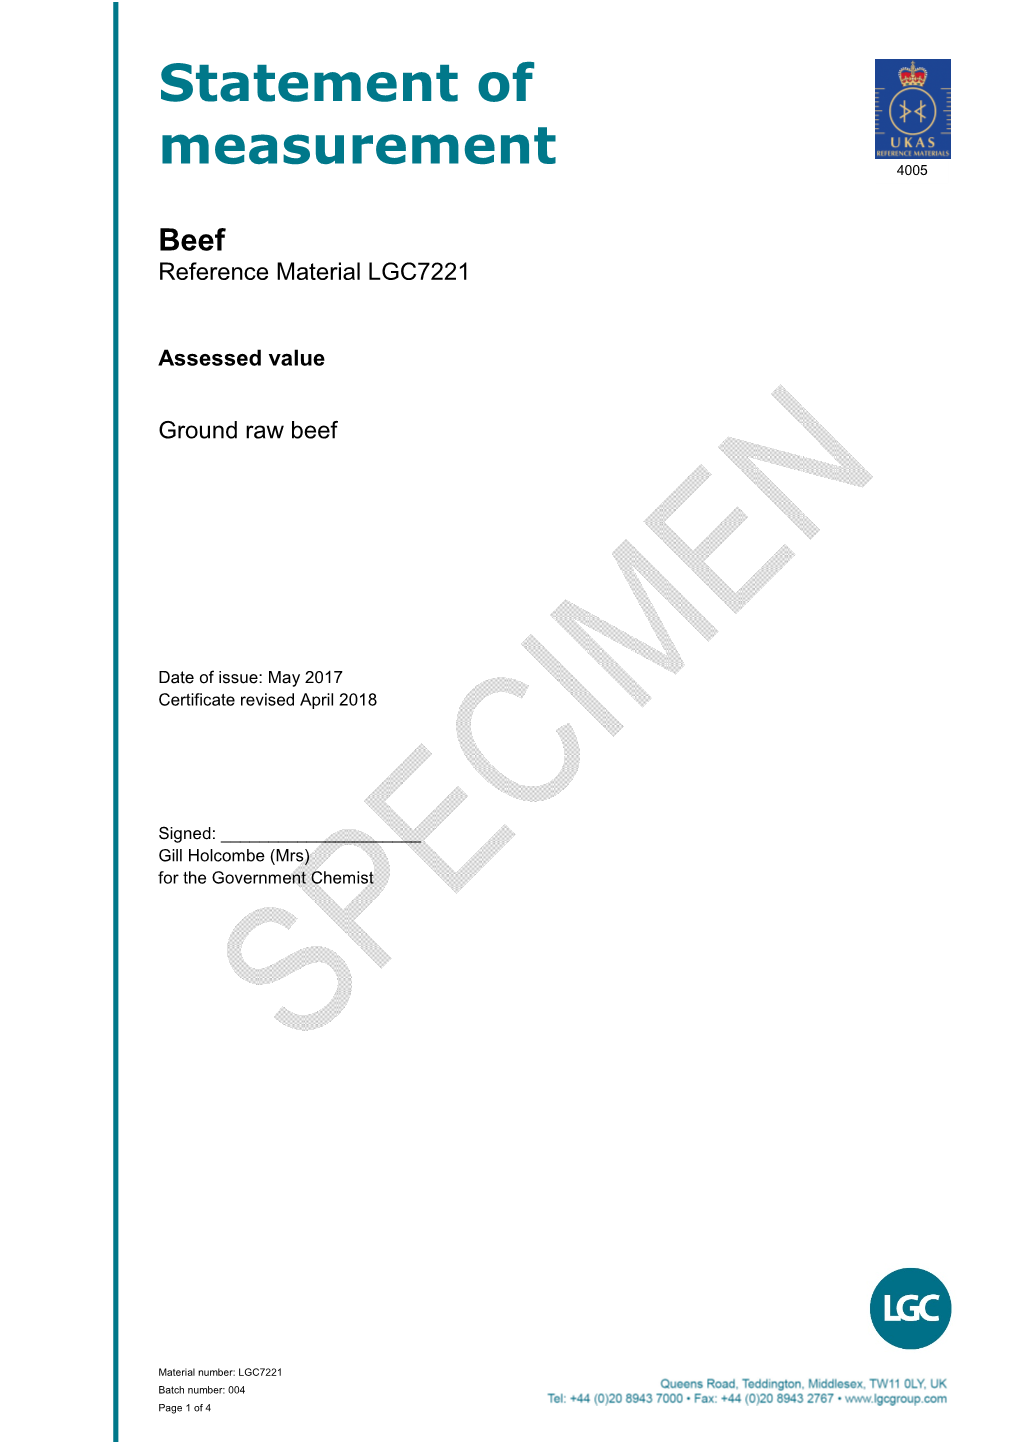 Statement of Measurement Beef